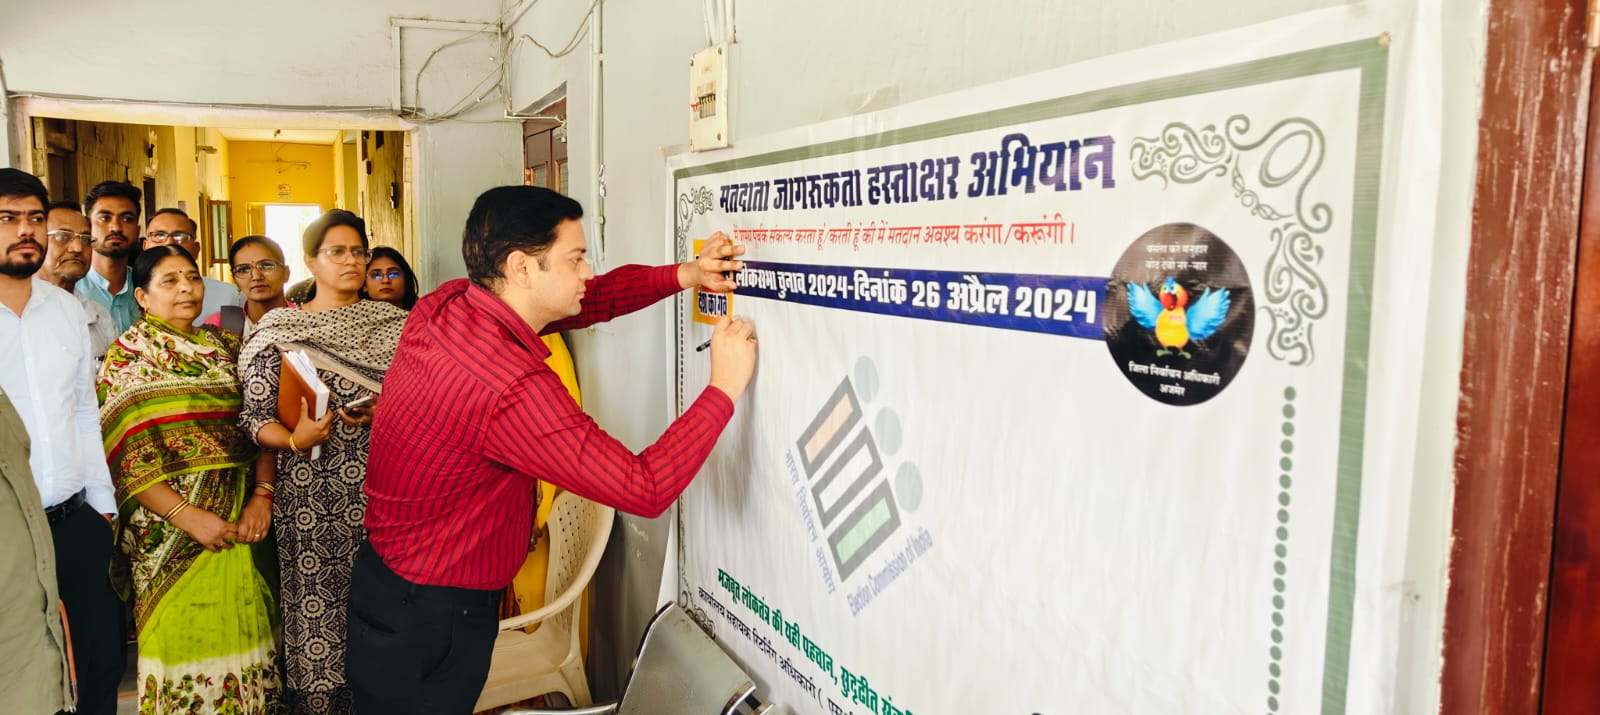 सहायक रिटर्निग अधिकारी मसूदा कुलदीप सिंह शेखावत ने मतदाता जागरूकता अभियान के तहत हस्ताक्षर अभियान कार्यक्रम का शुभारंभ किया